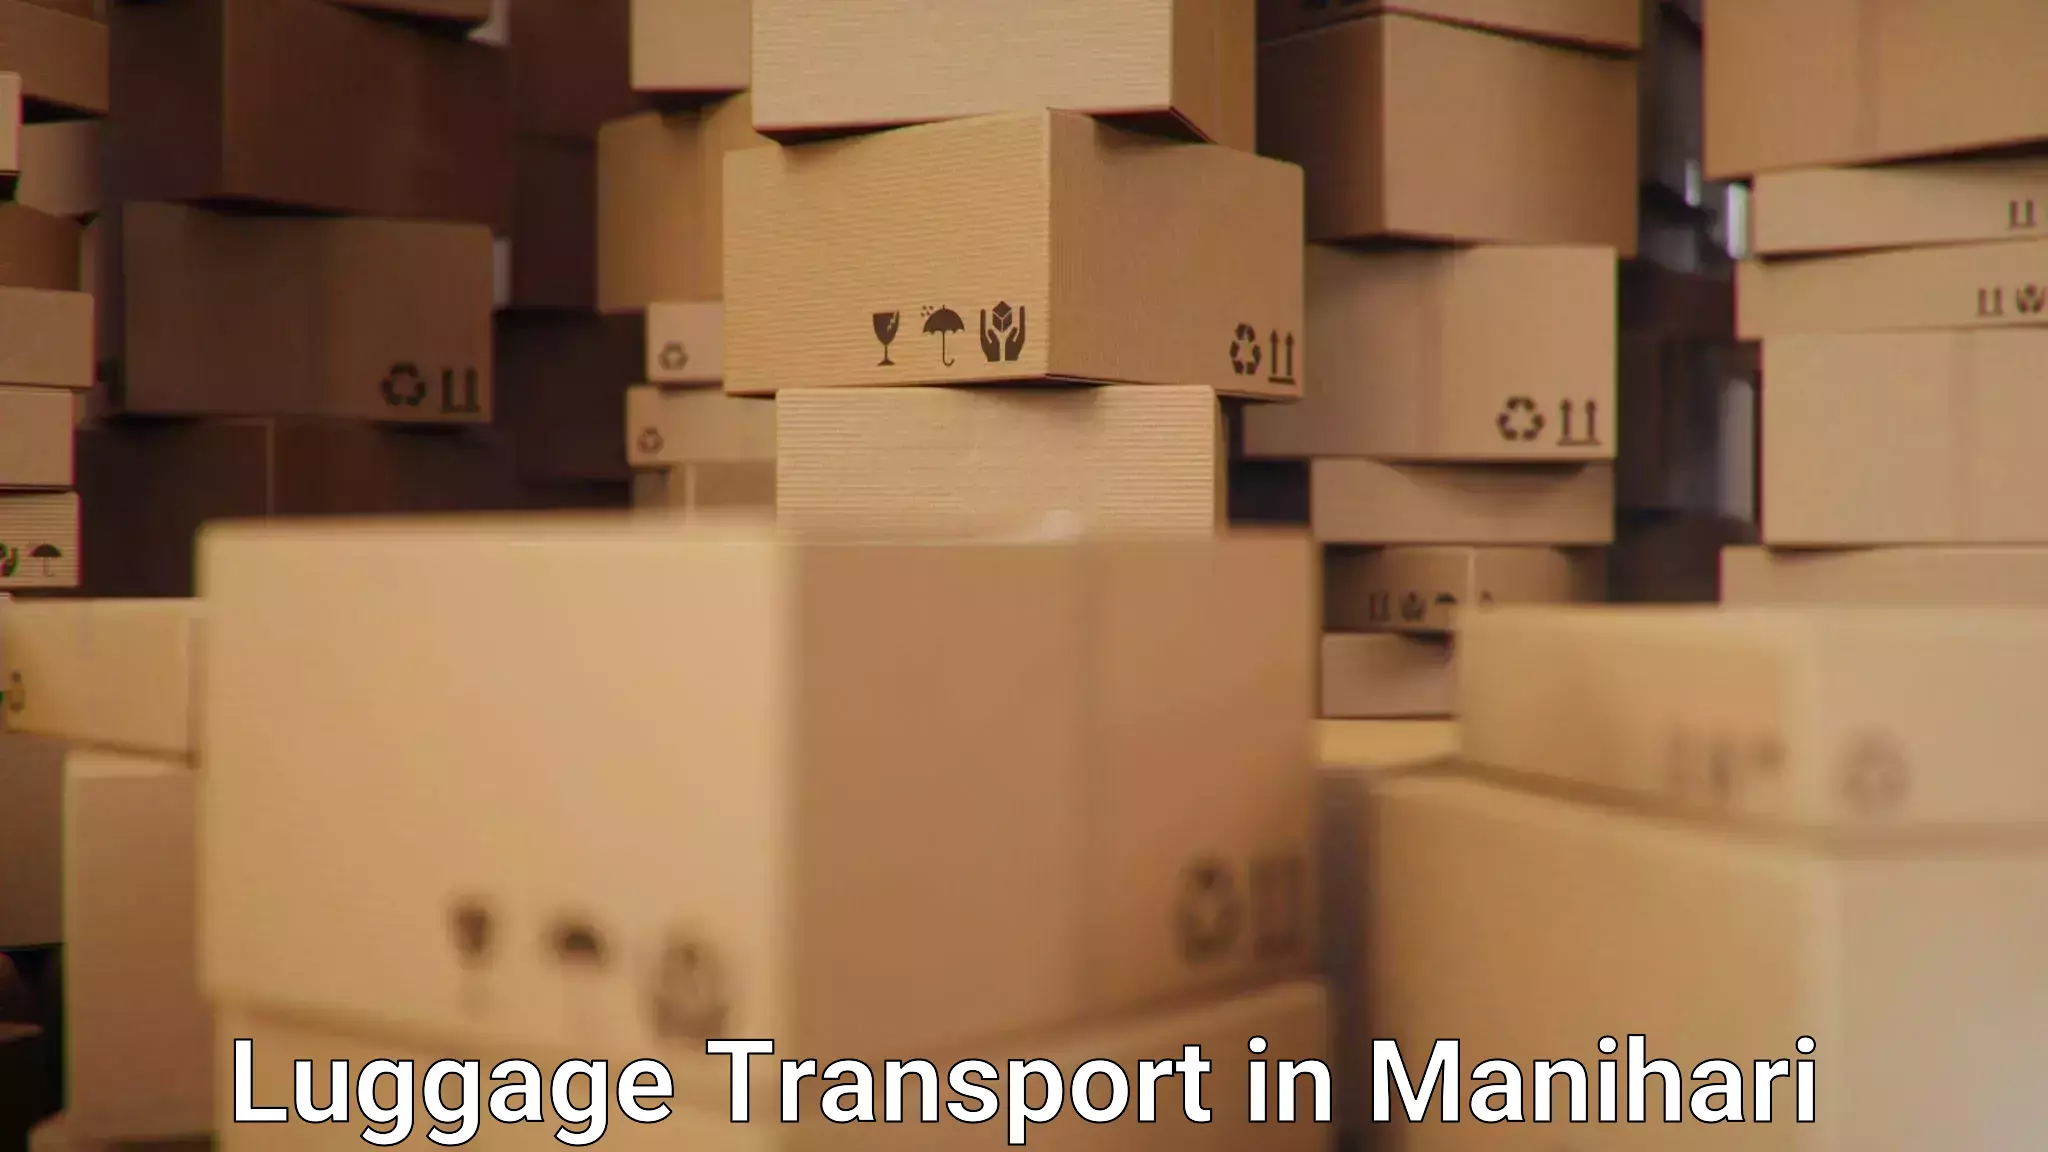 Luggage transport rates in Manihari